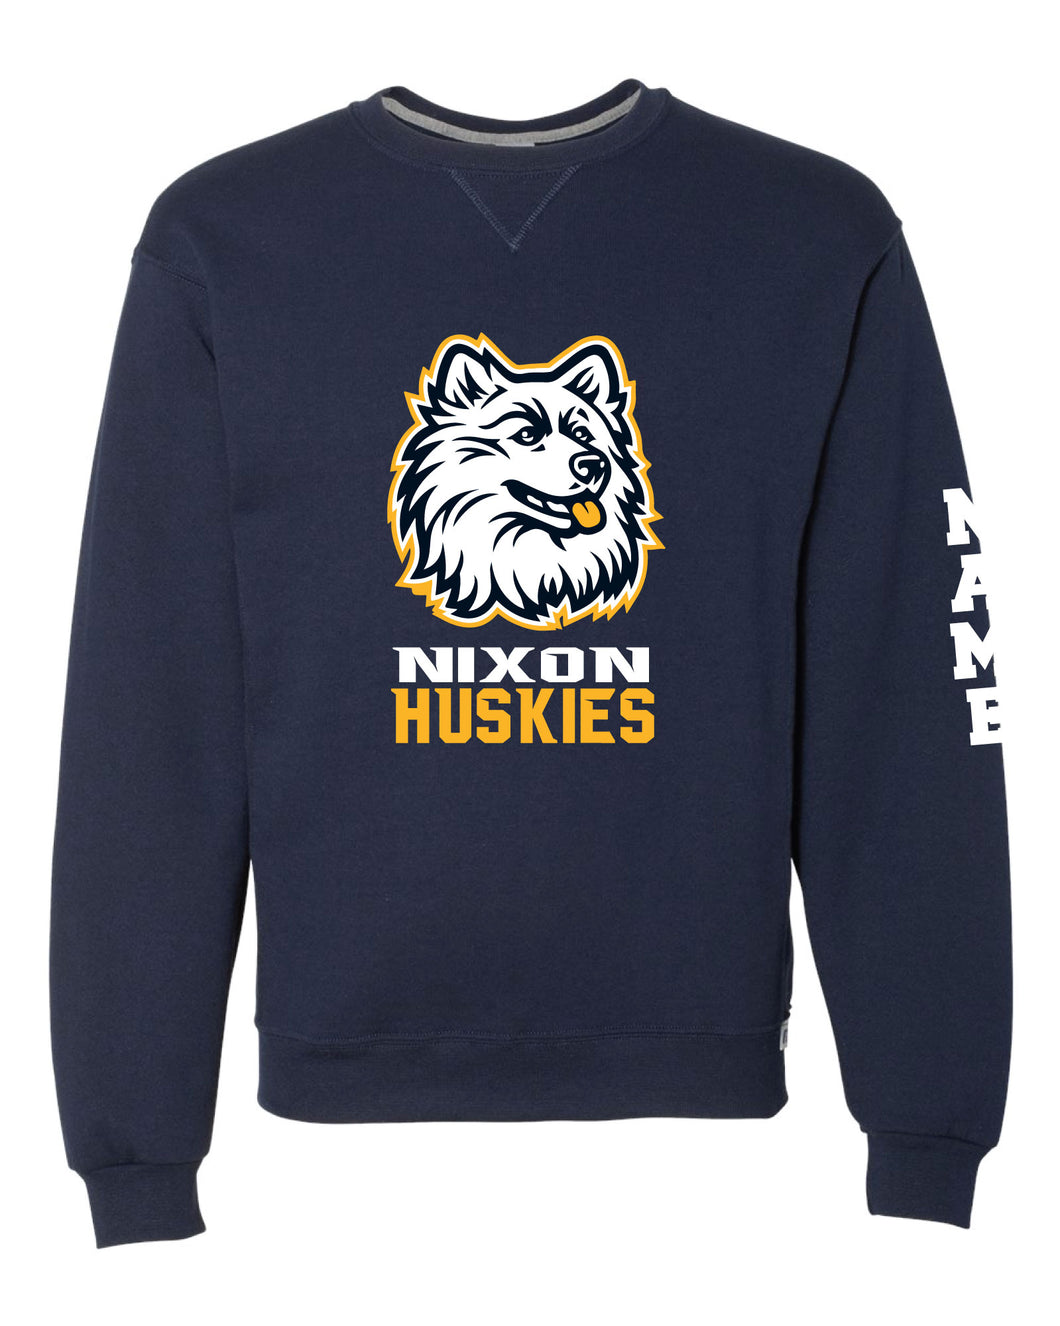 Nixon Huskies School Russell Athletic Cotton Crewneck Sweatshirt - Navy - 5KounT